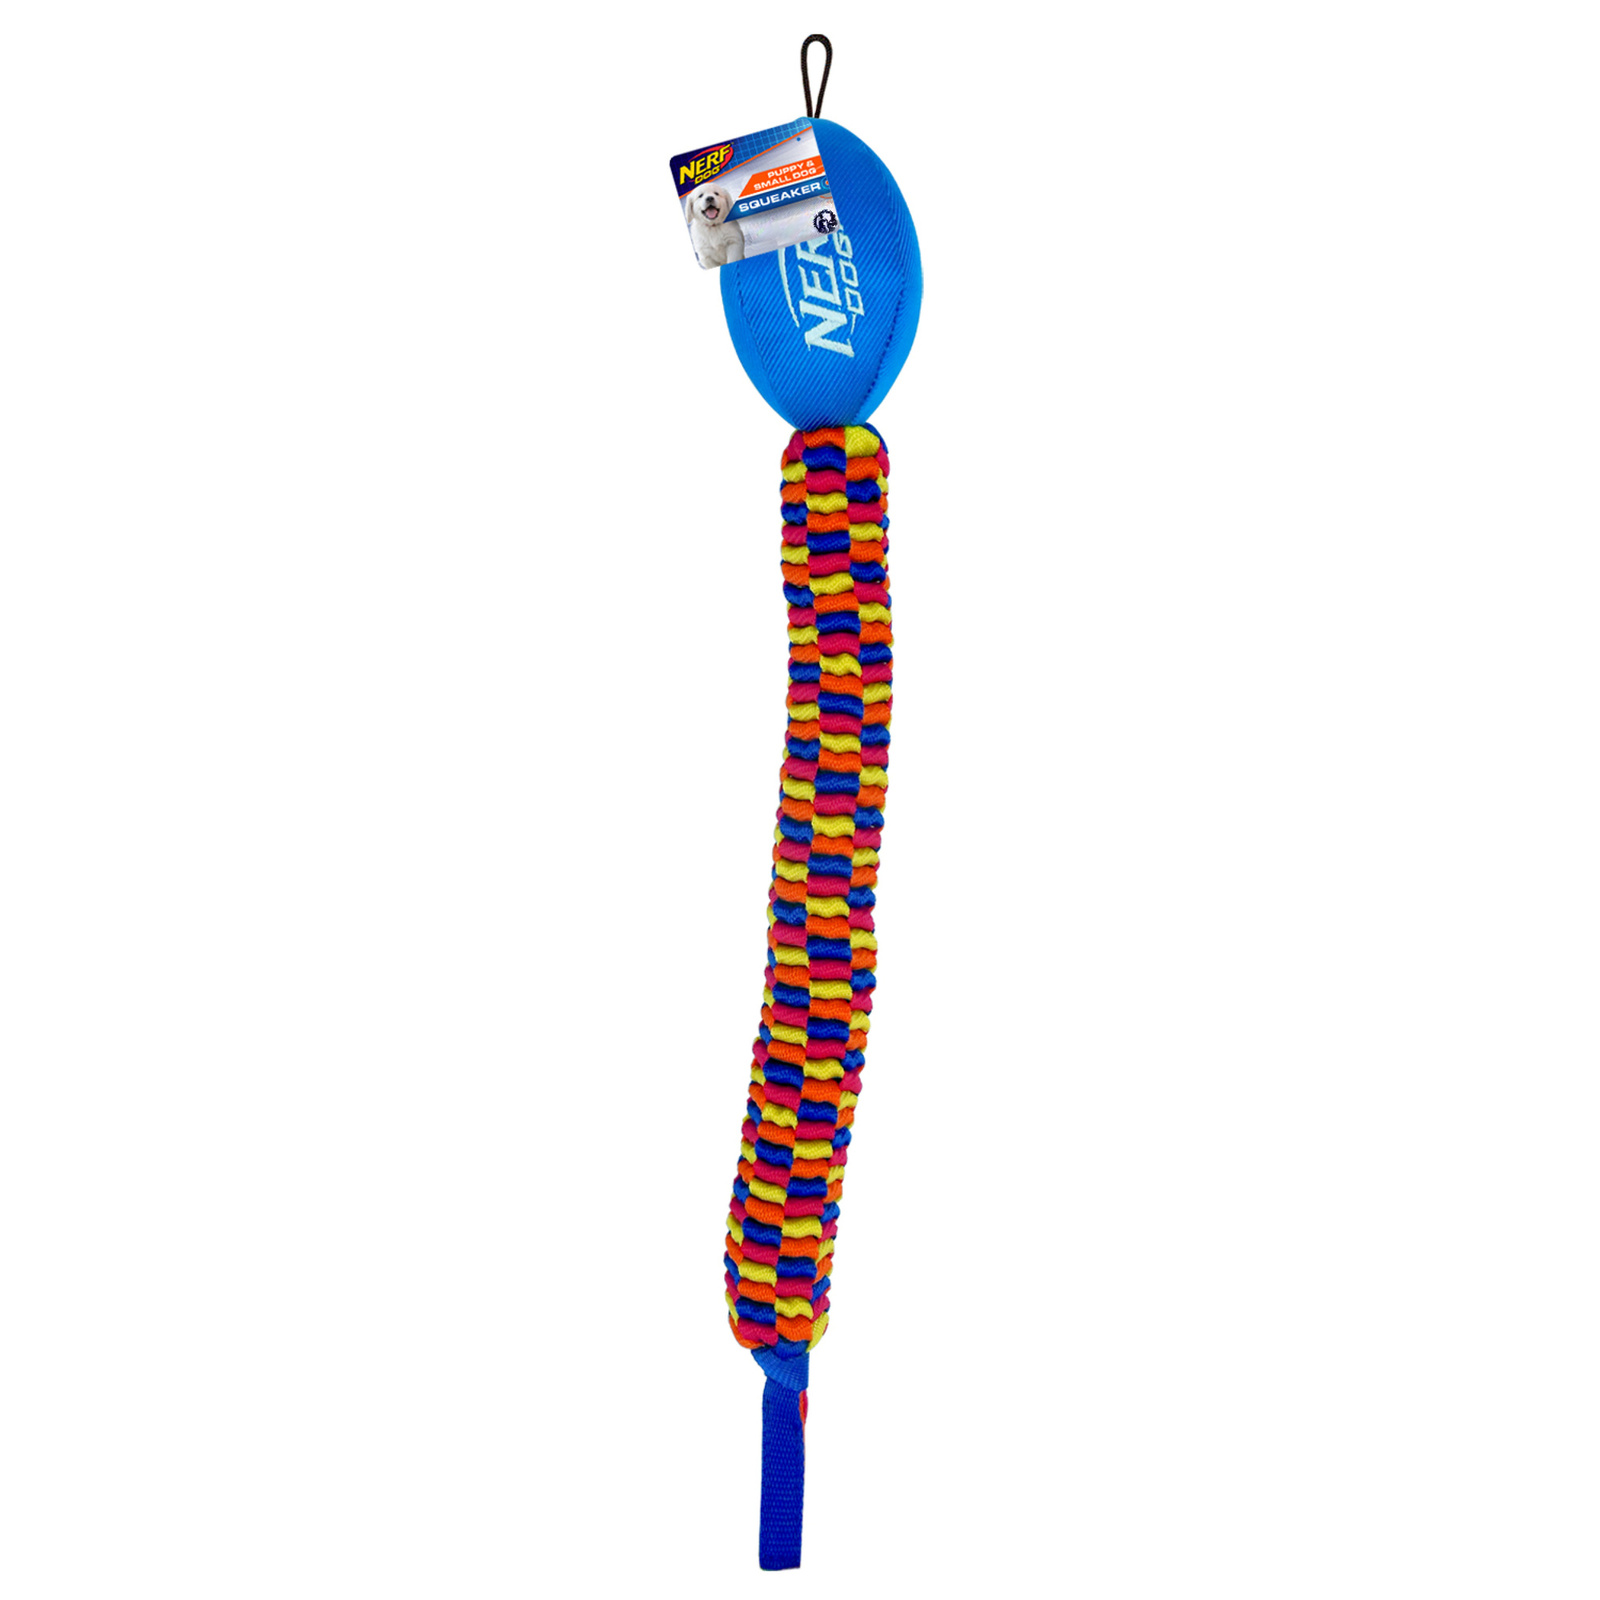 Nerf Nerf мяч для регби с плетеным шлейфом, 48 см, (синий/оранжевый/зеленый/красный) (272 г) nerf мегатон игрушка для собак мяч для регби из нейлона и вспененной резины оранжевый синий 18 см